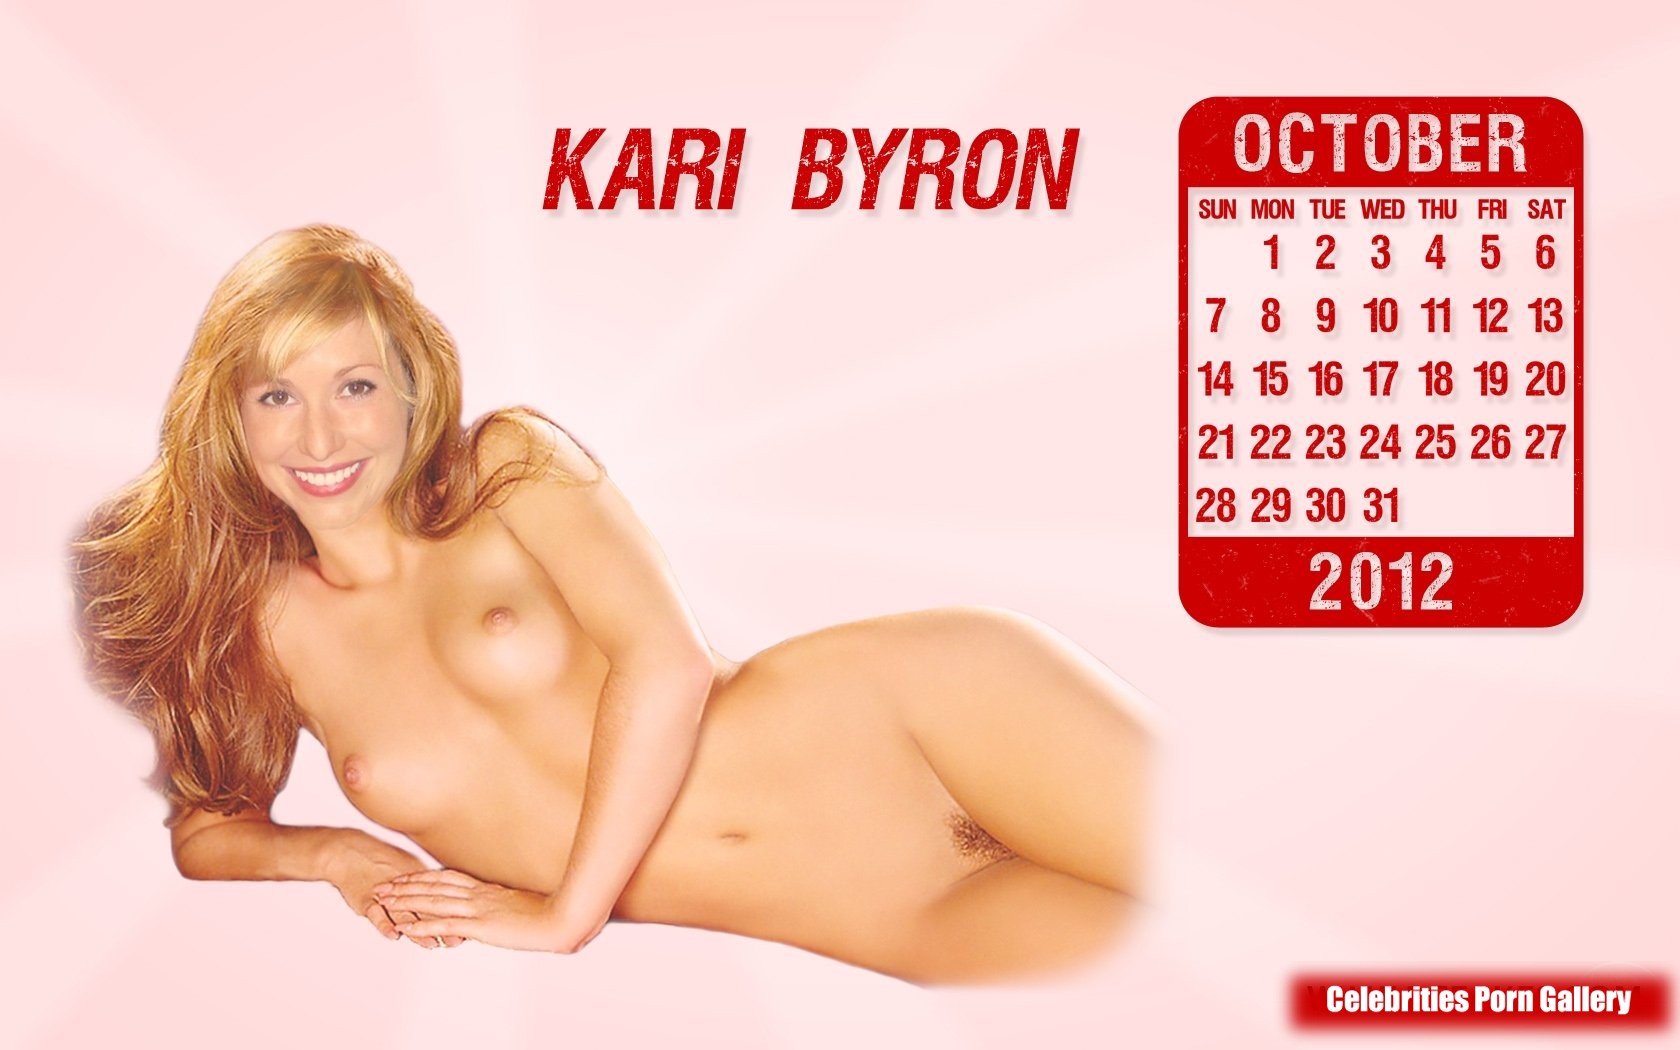 Kari byron leaked nude